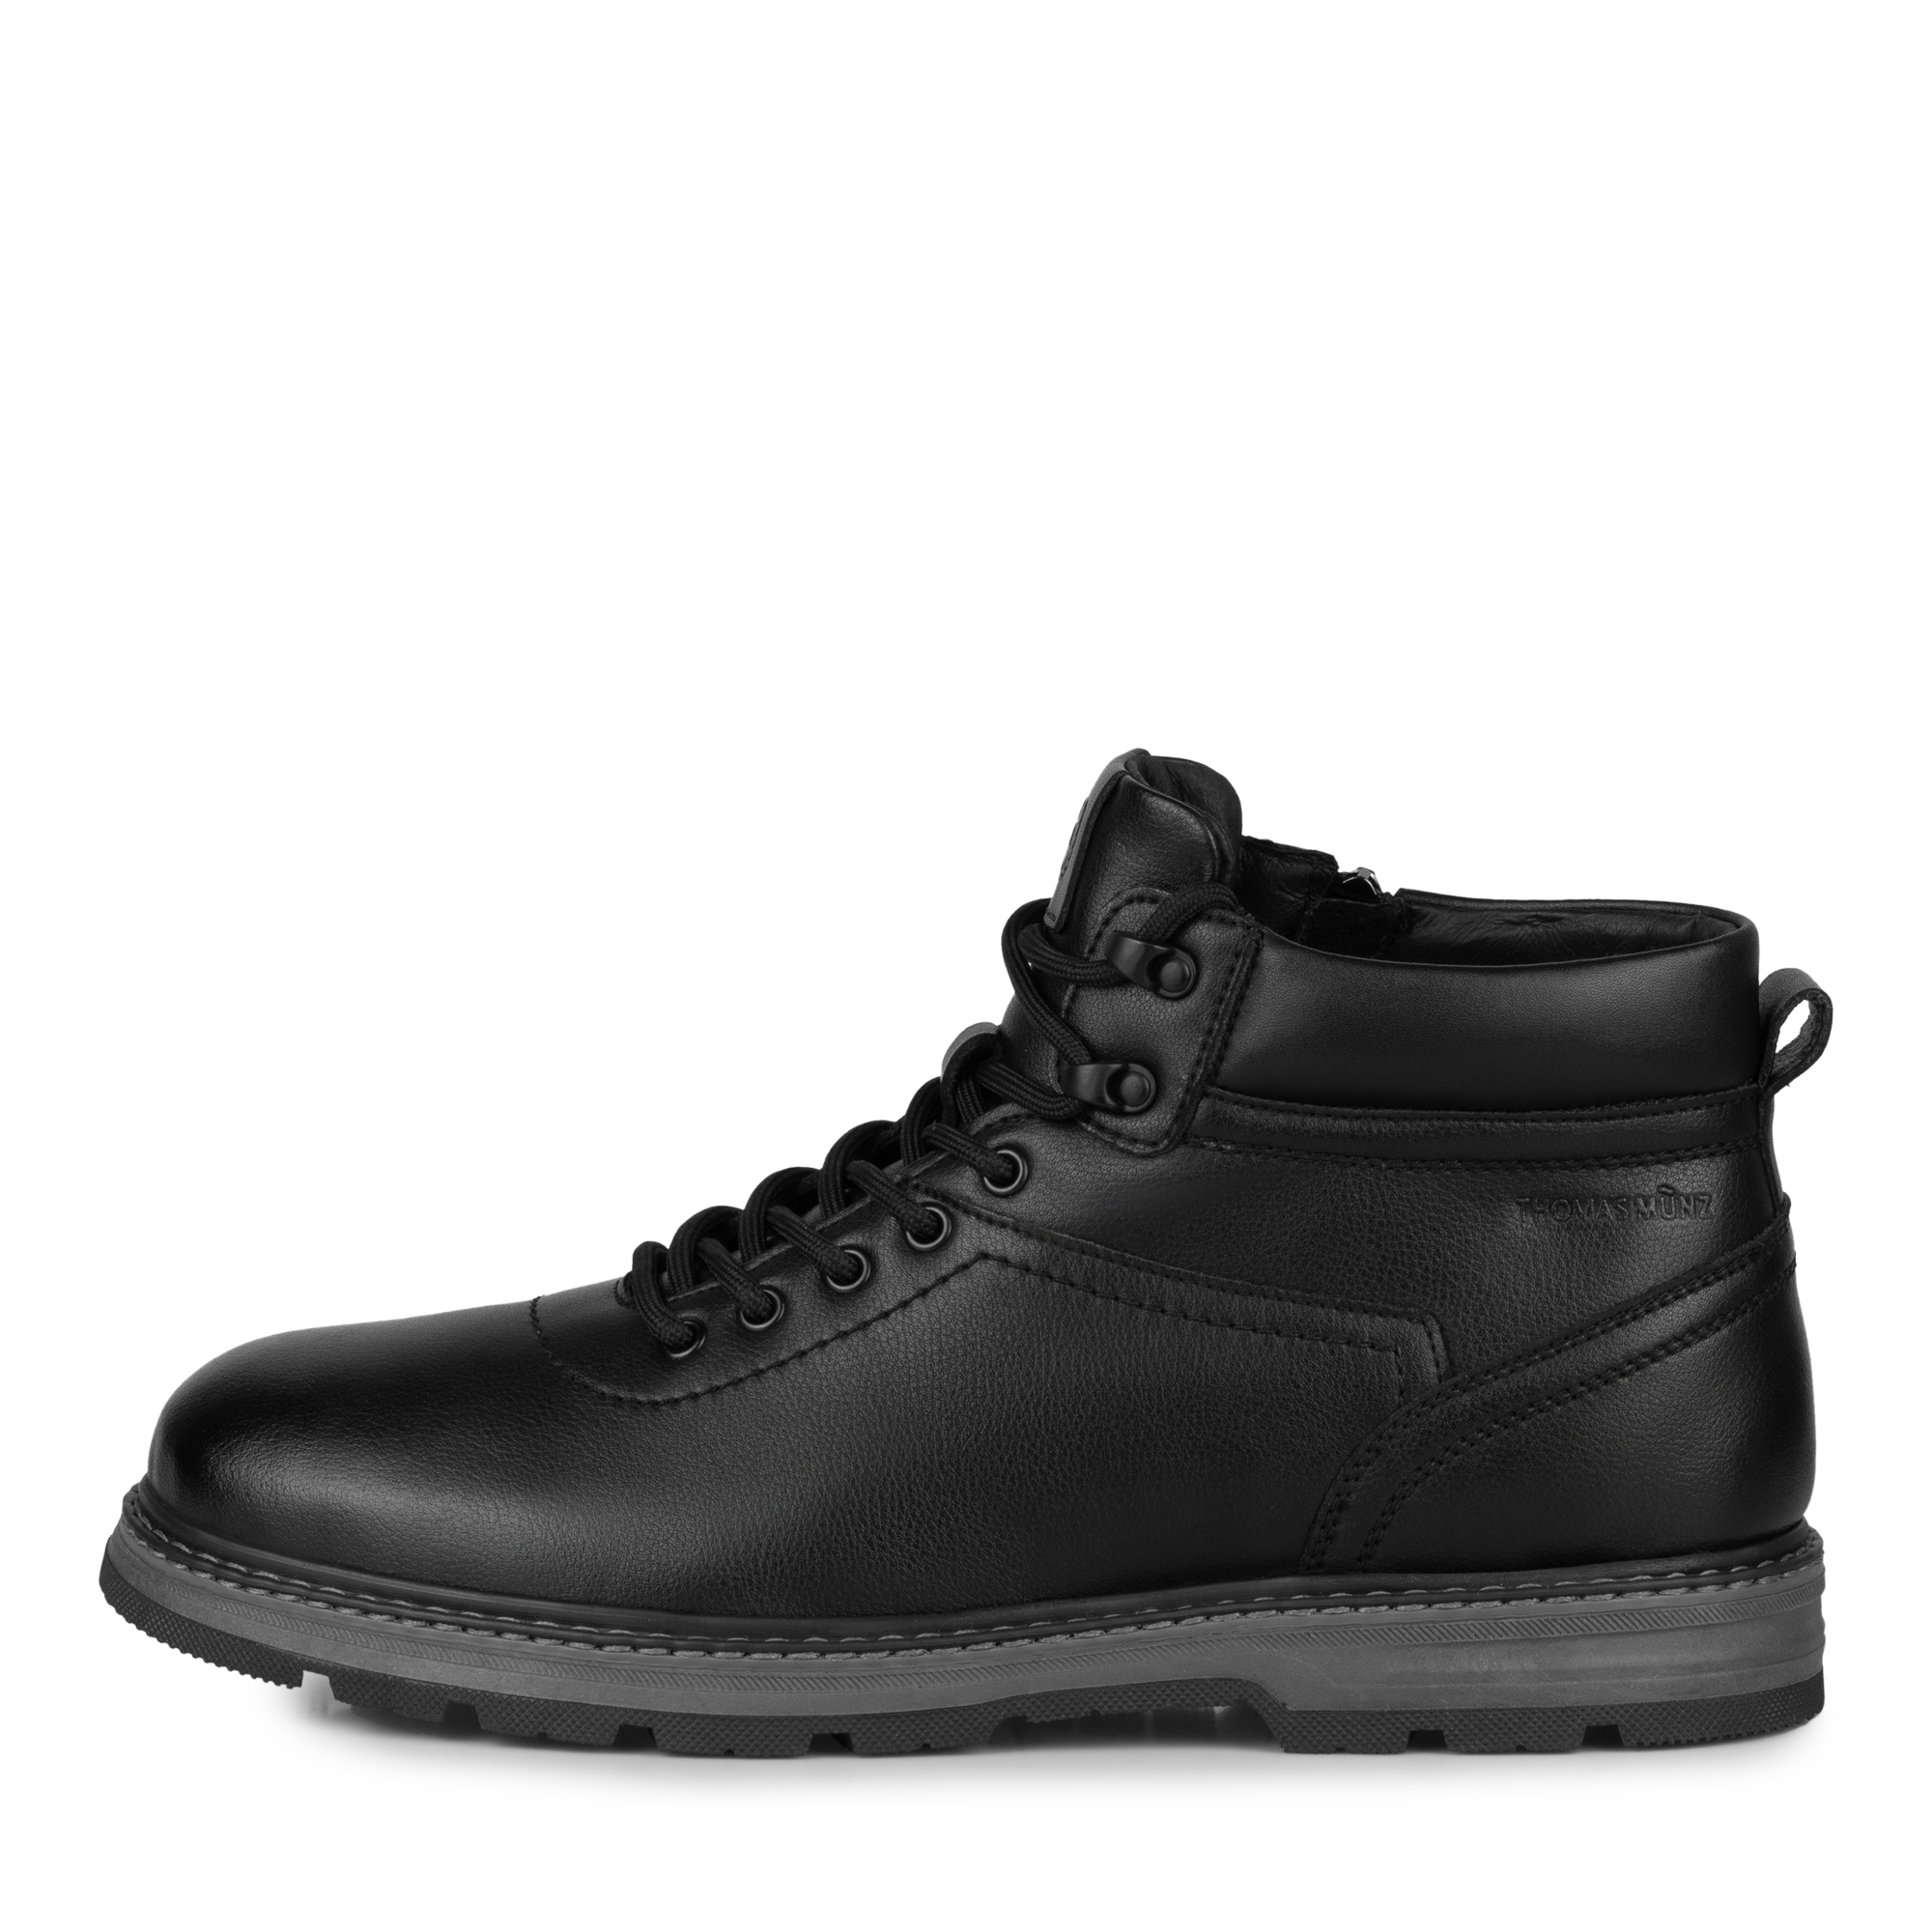 Ботинки Thomas Munz 058-1119A-5602, цвет черный, размер 44